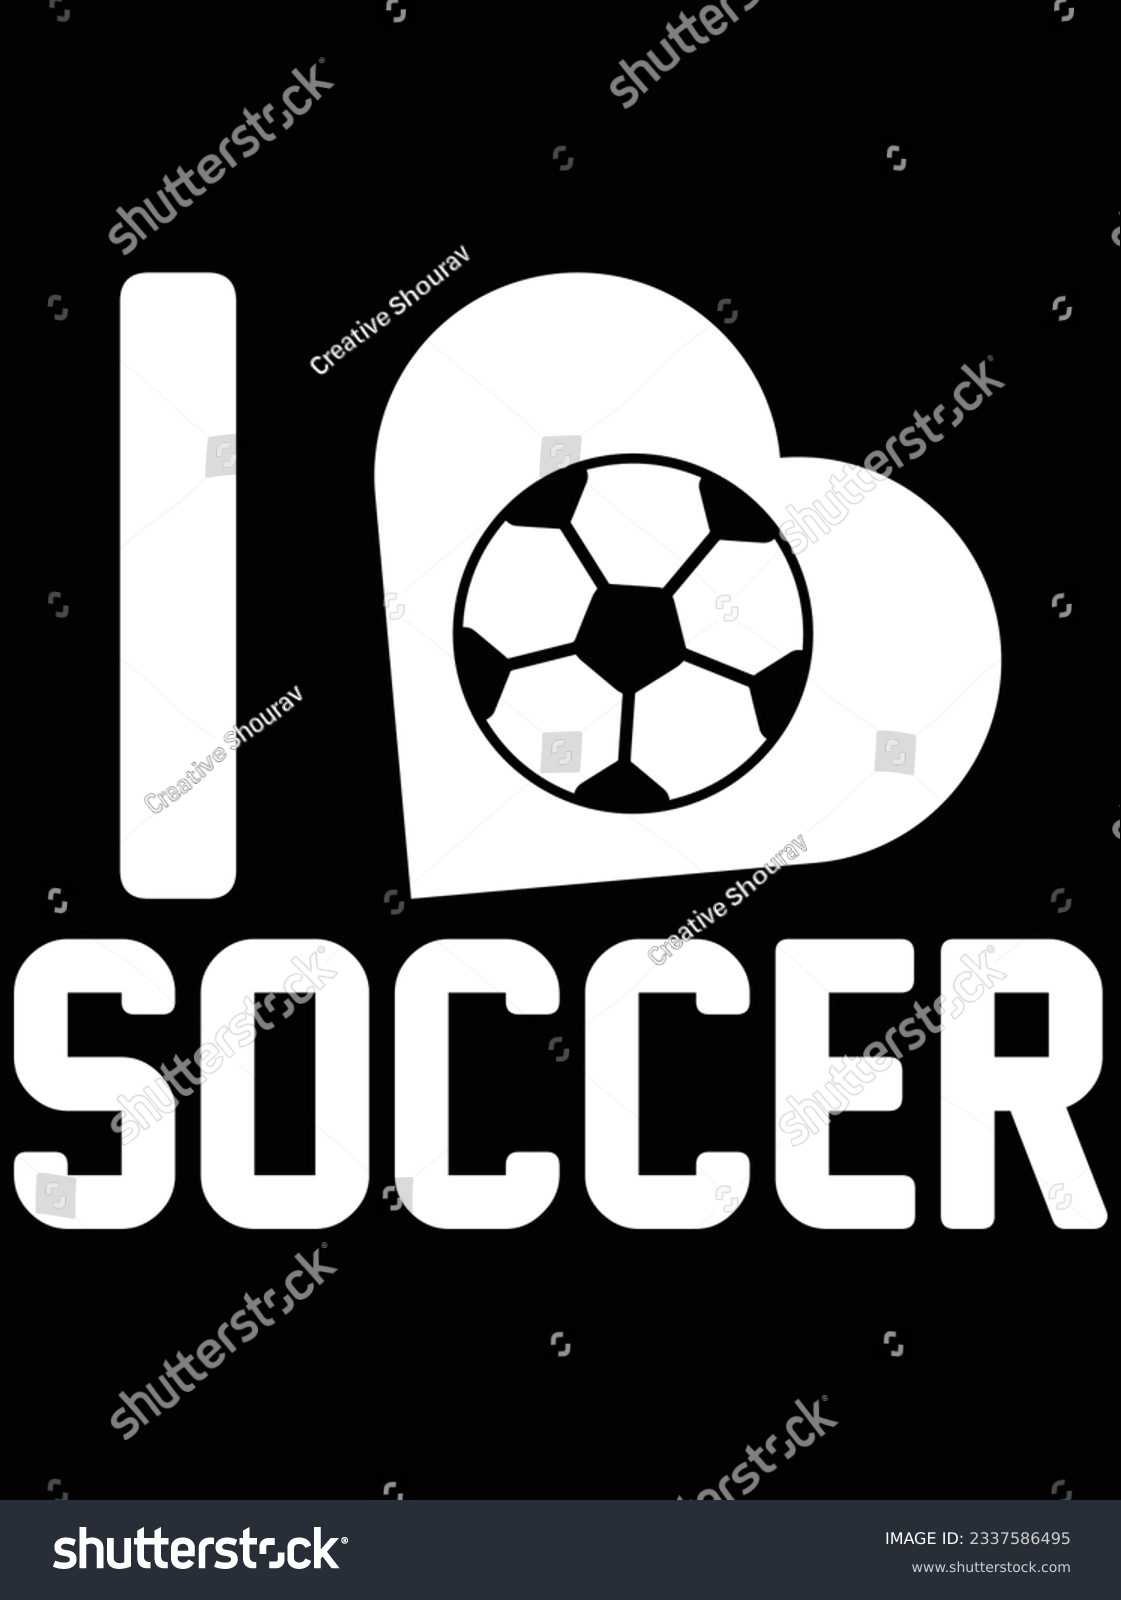 SVG of I love soccer vector art design, eps file. design file for t-shirt. SVG, EPS cuttable design file svg